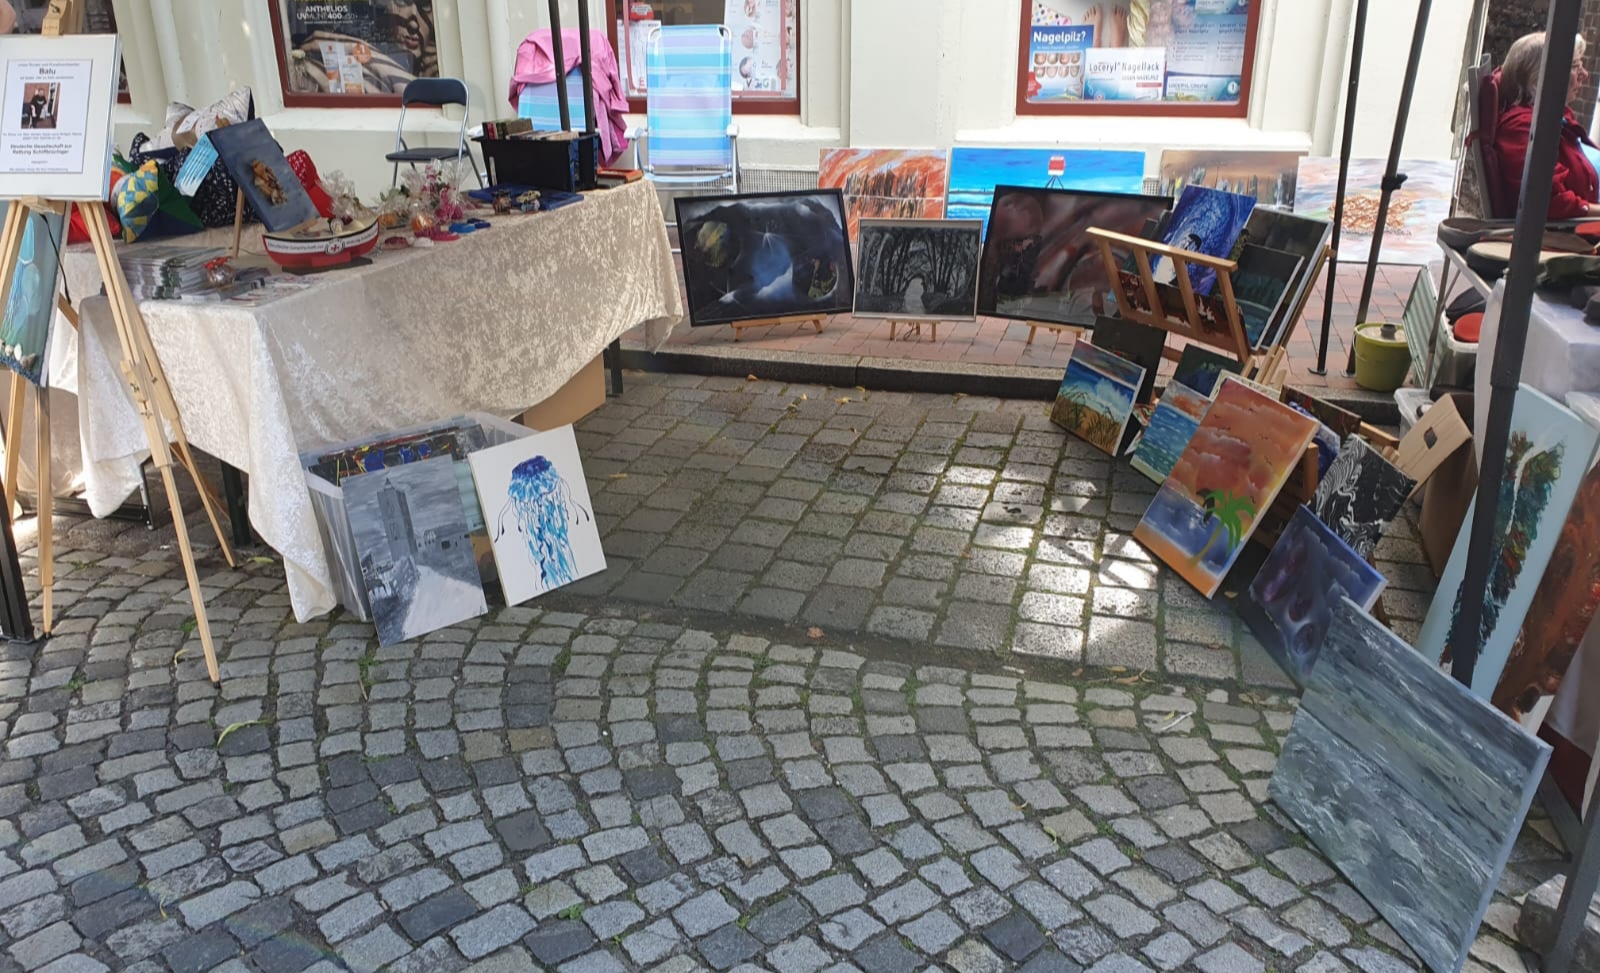 Auf dem Kunsthandwerkermarkt in Leer stehen maritime Bilder vom verstorbenen Reinhard Baalmann zum Verkauf, dessen Porträt auf einer Staffelei ausgestellt ist. Der Erlös der Verkäufe wird der DGzRS gespendet, das Sammelschiffchen steht auf einem der Tische, an dem die Werke lehnen.